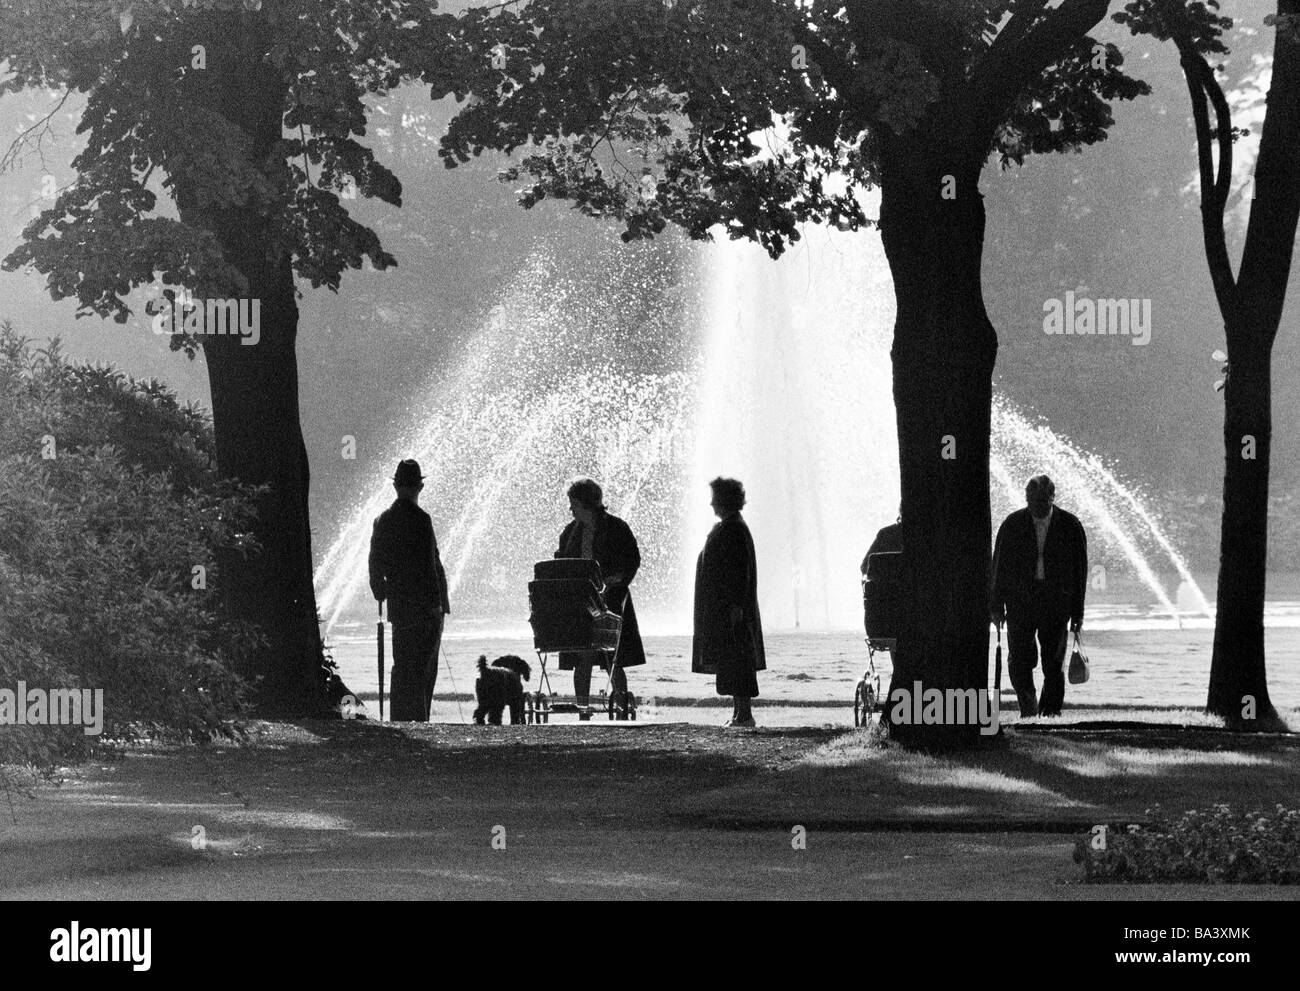 Années 70, photo en noir et blanc, les gens se promener dans un parc et se tenir en face d'une fontaine, rétroéclairage, silhouette, les personnes plus âgées, de 60 à 70 ans, landau, un chien, caniche, Stadtgarten, D-Bottrop, Ruhr, Rhénanie du Nord-Westphalie Banque D'Images